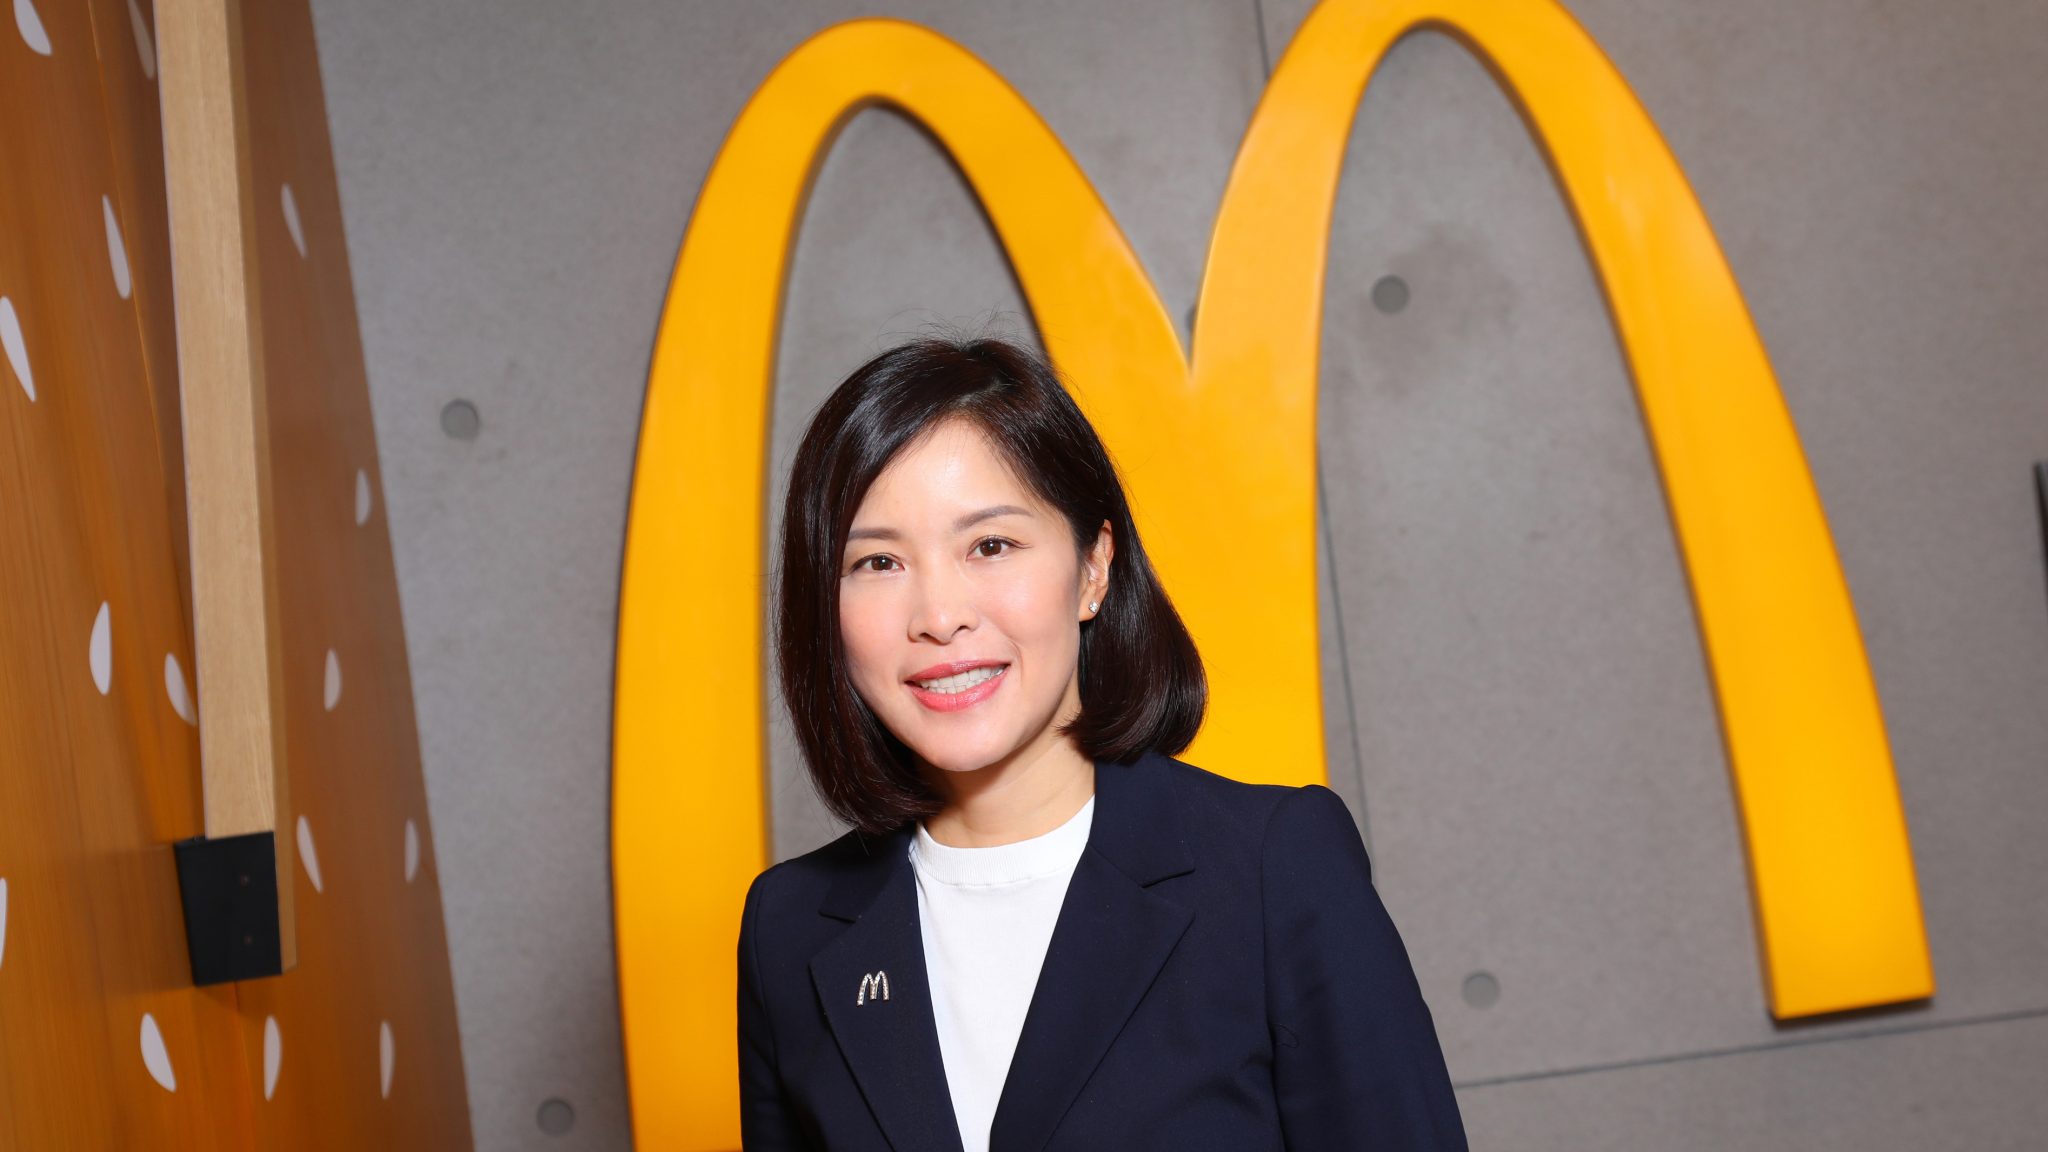 Randy Lai, CEO of McDonalds Hong Kong